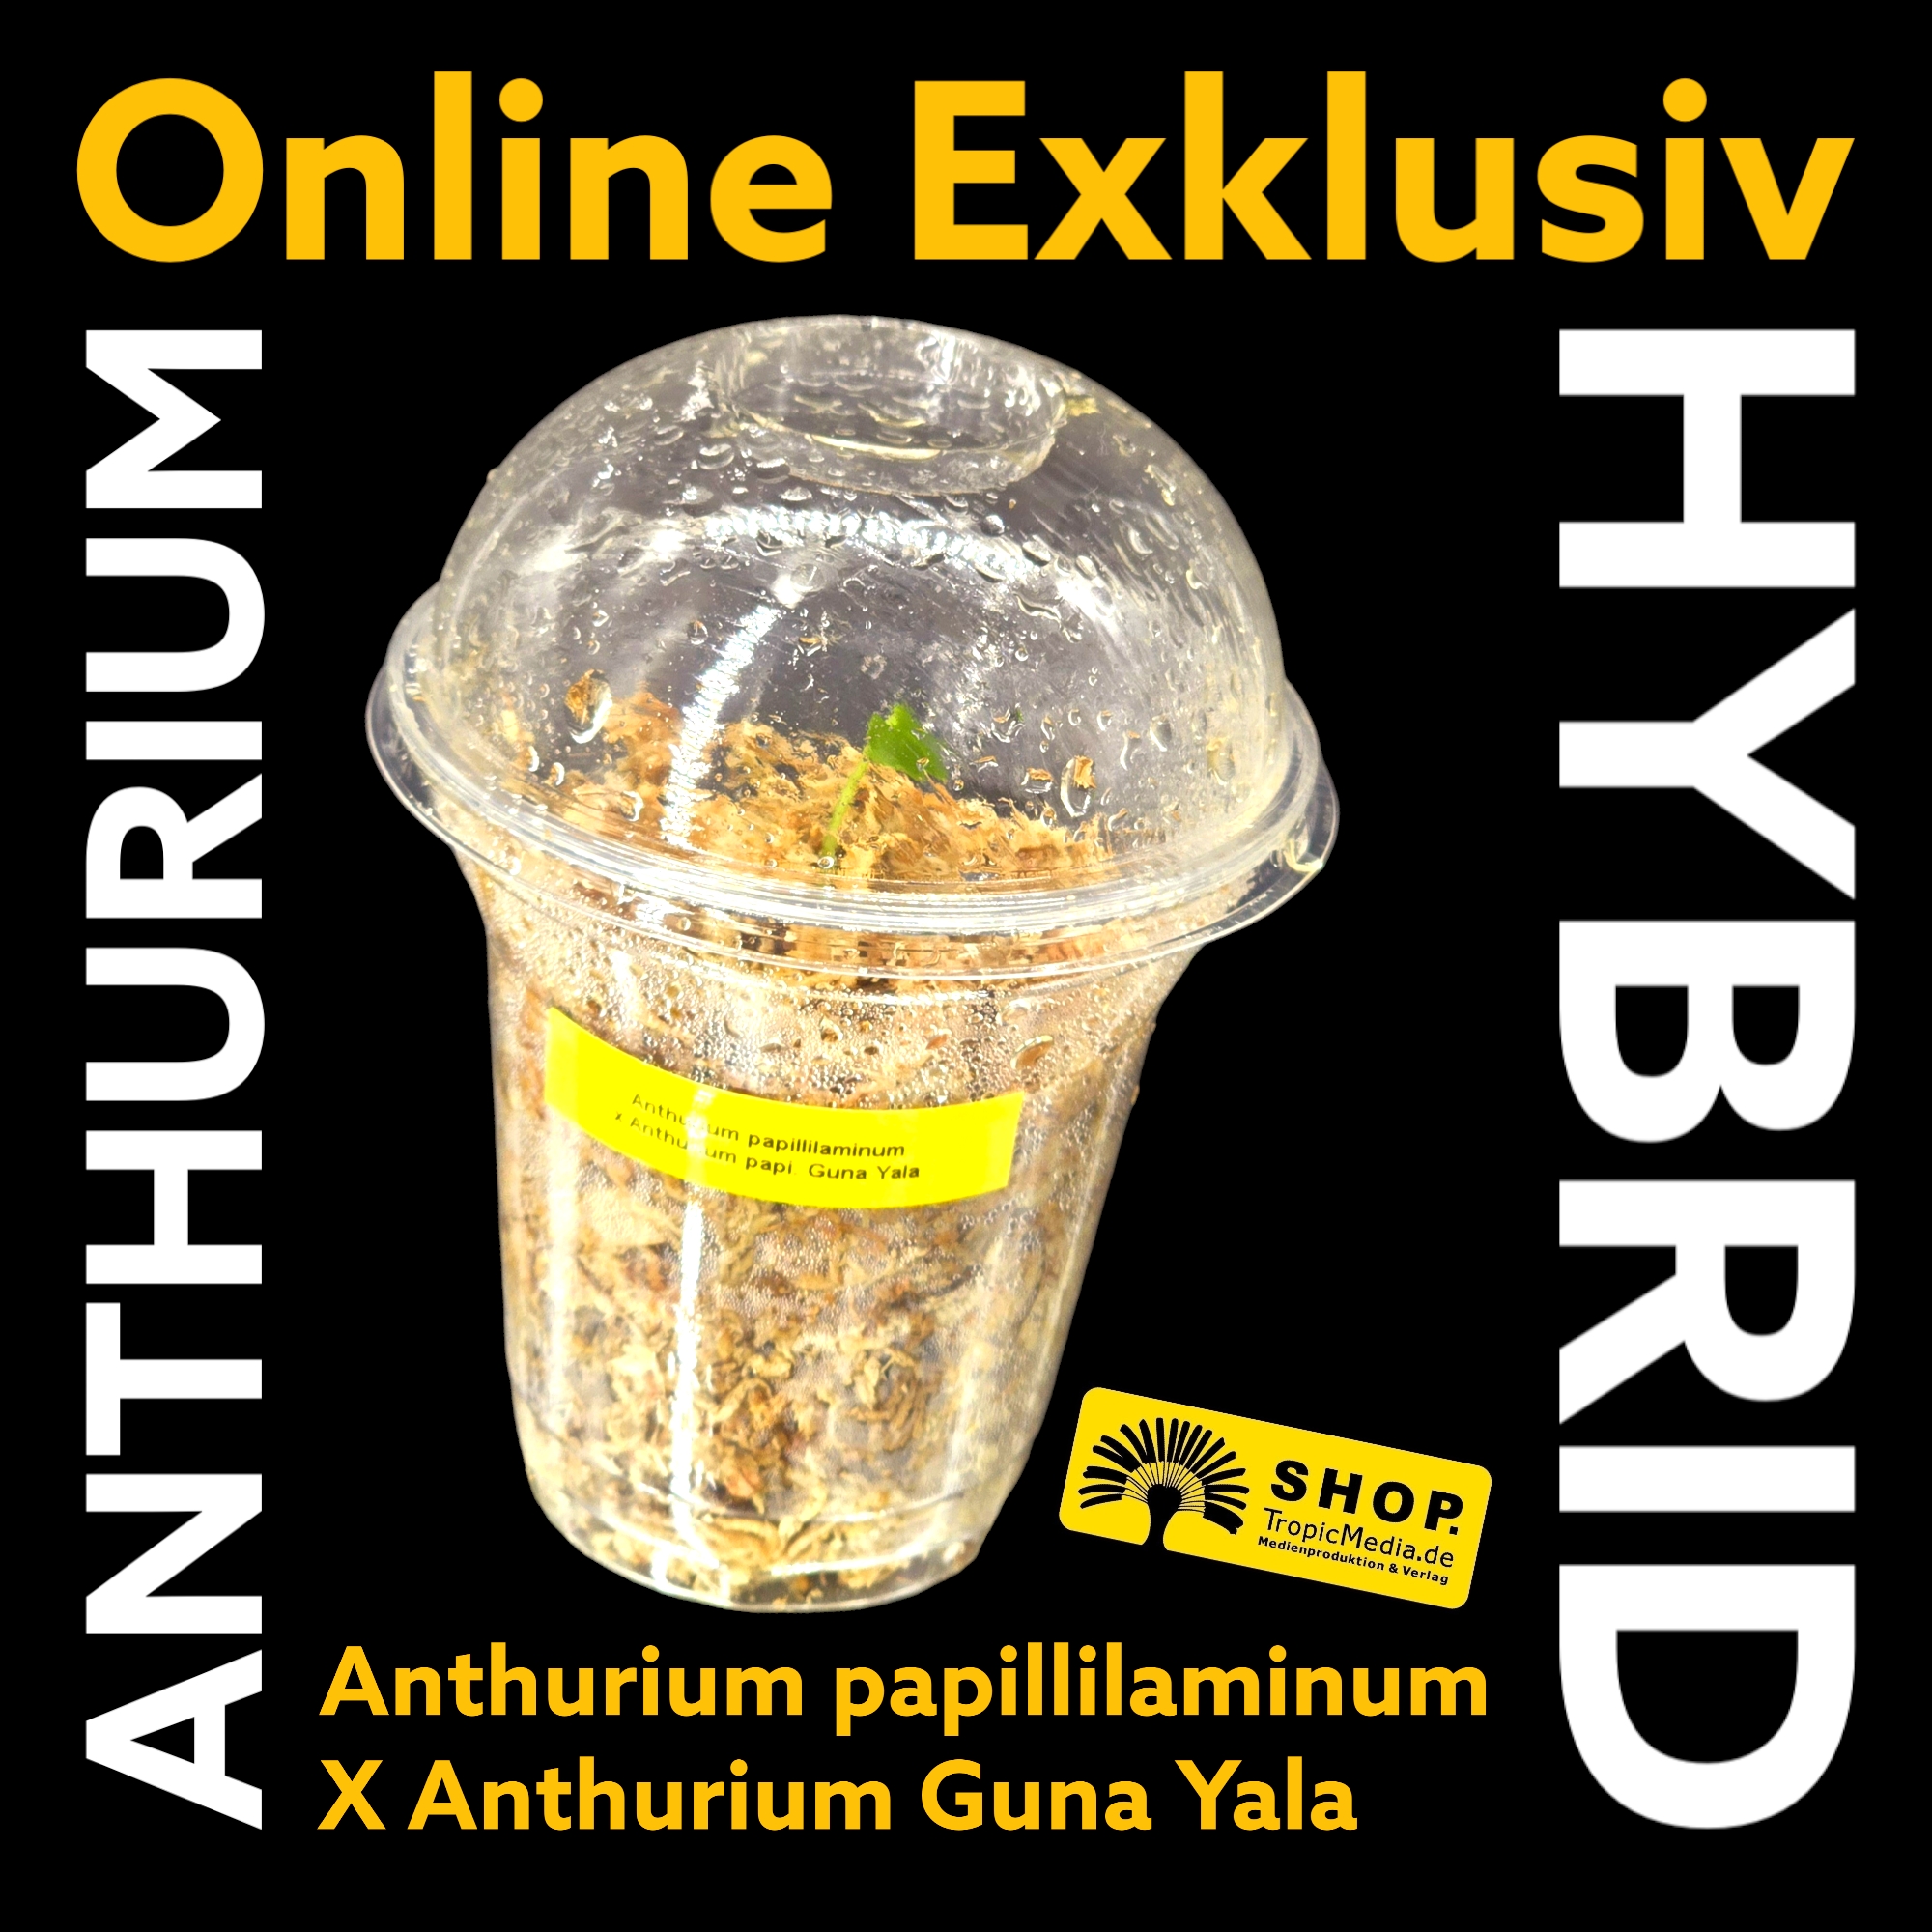 Anthurium papillilaminum X Anthurium Guna Yala EXQUISITE Kreuzung erstmals in Europa